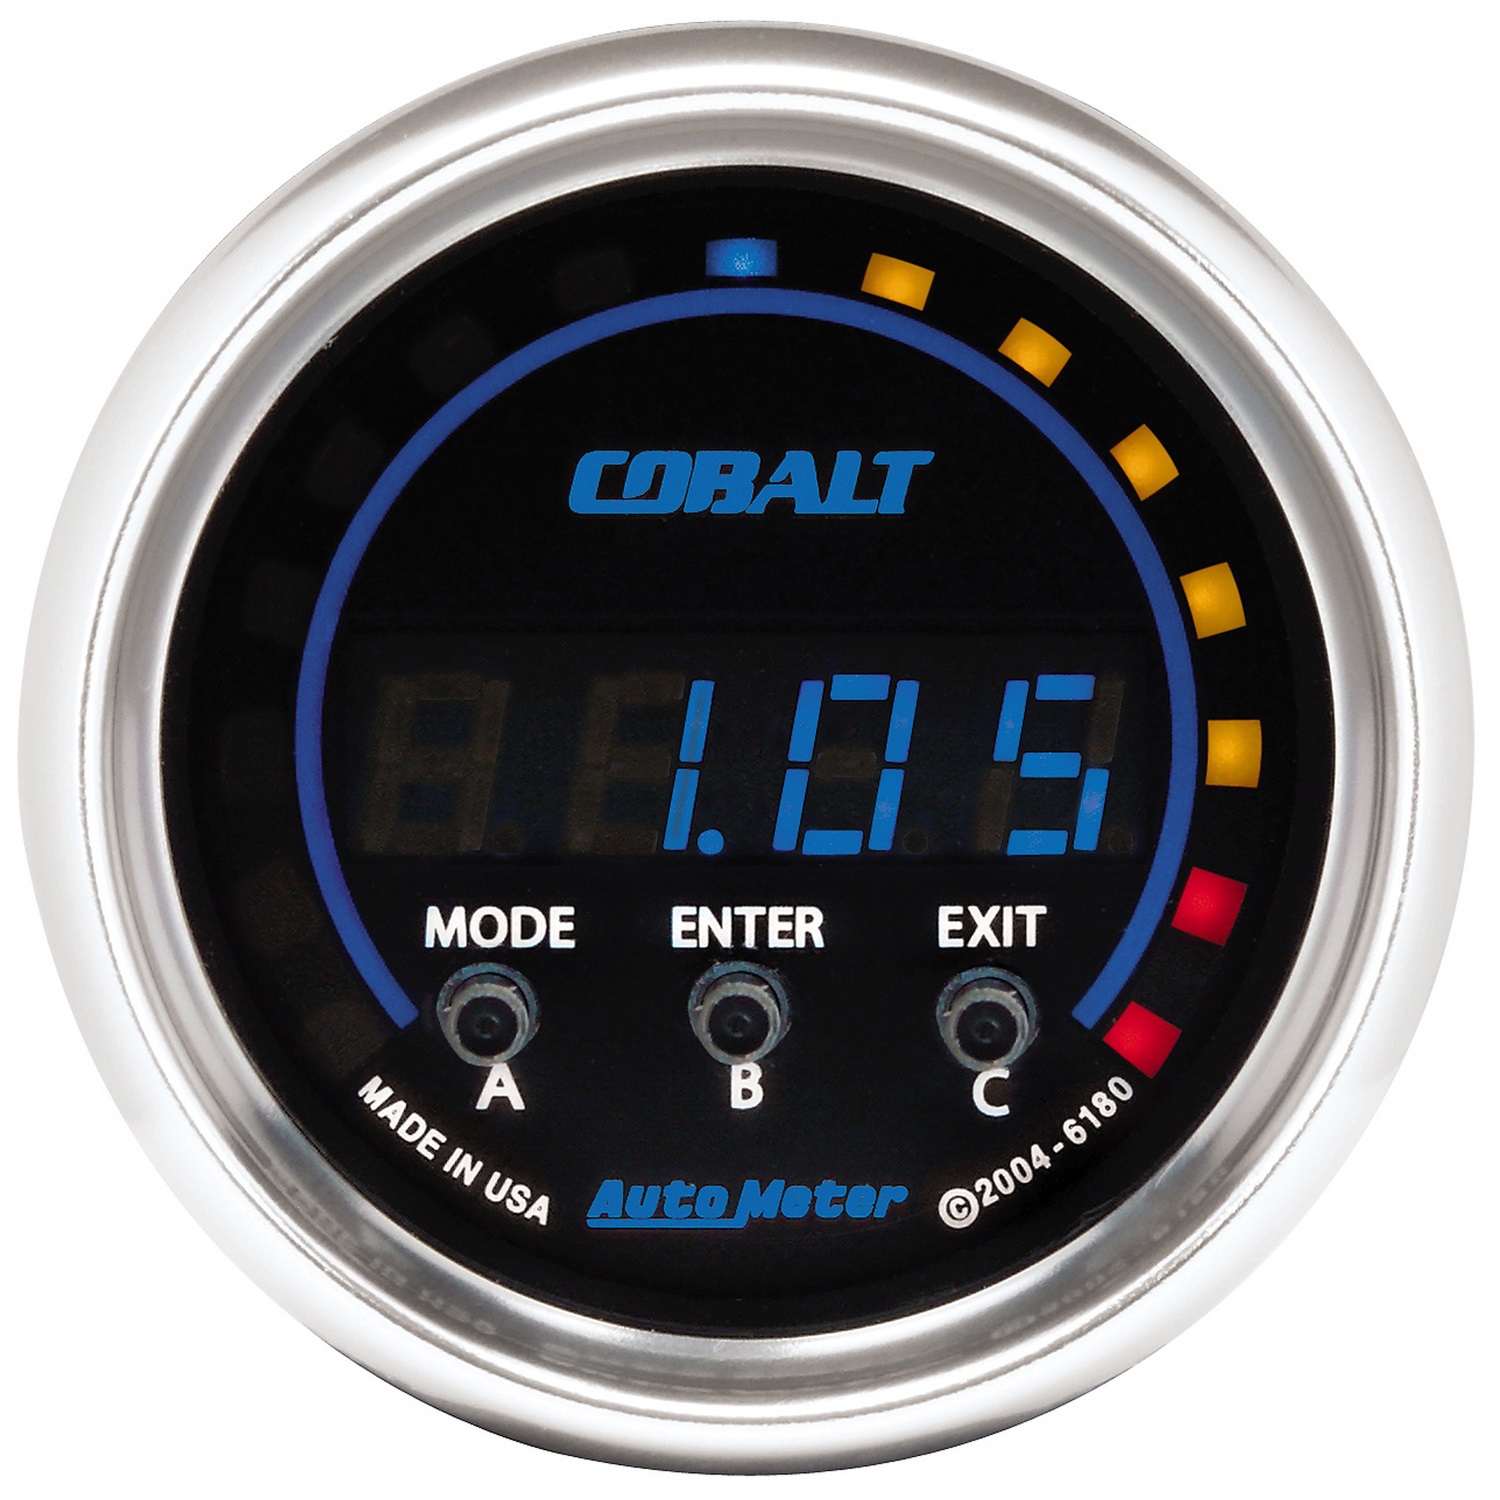 Auto Meter Auto Meter 6180 Cobalt; Digital D-PIC Gauge